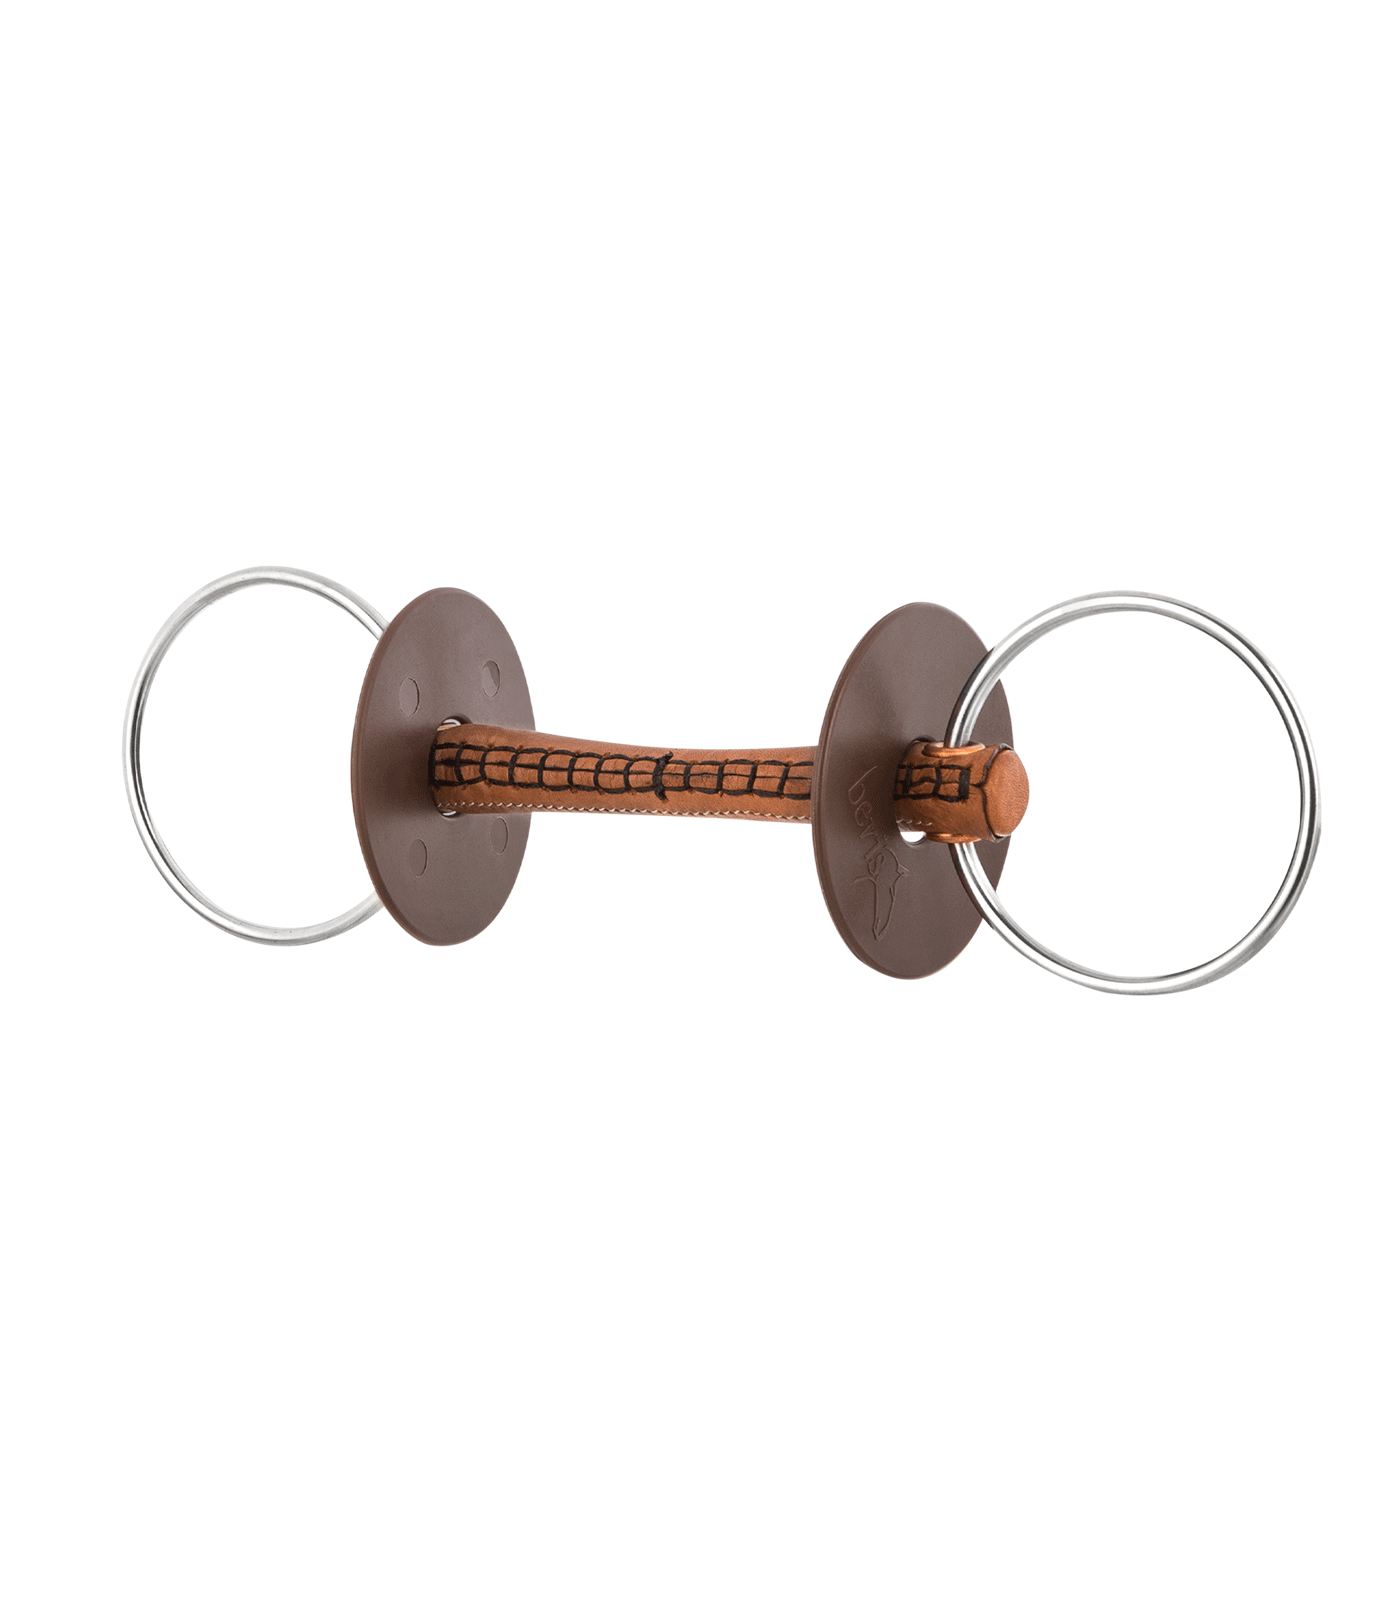 Filetto ad anelli beris con imboccatura ricoperta in cuoio, anello 7,5cm